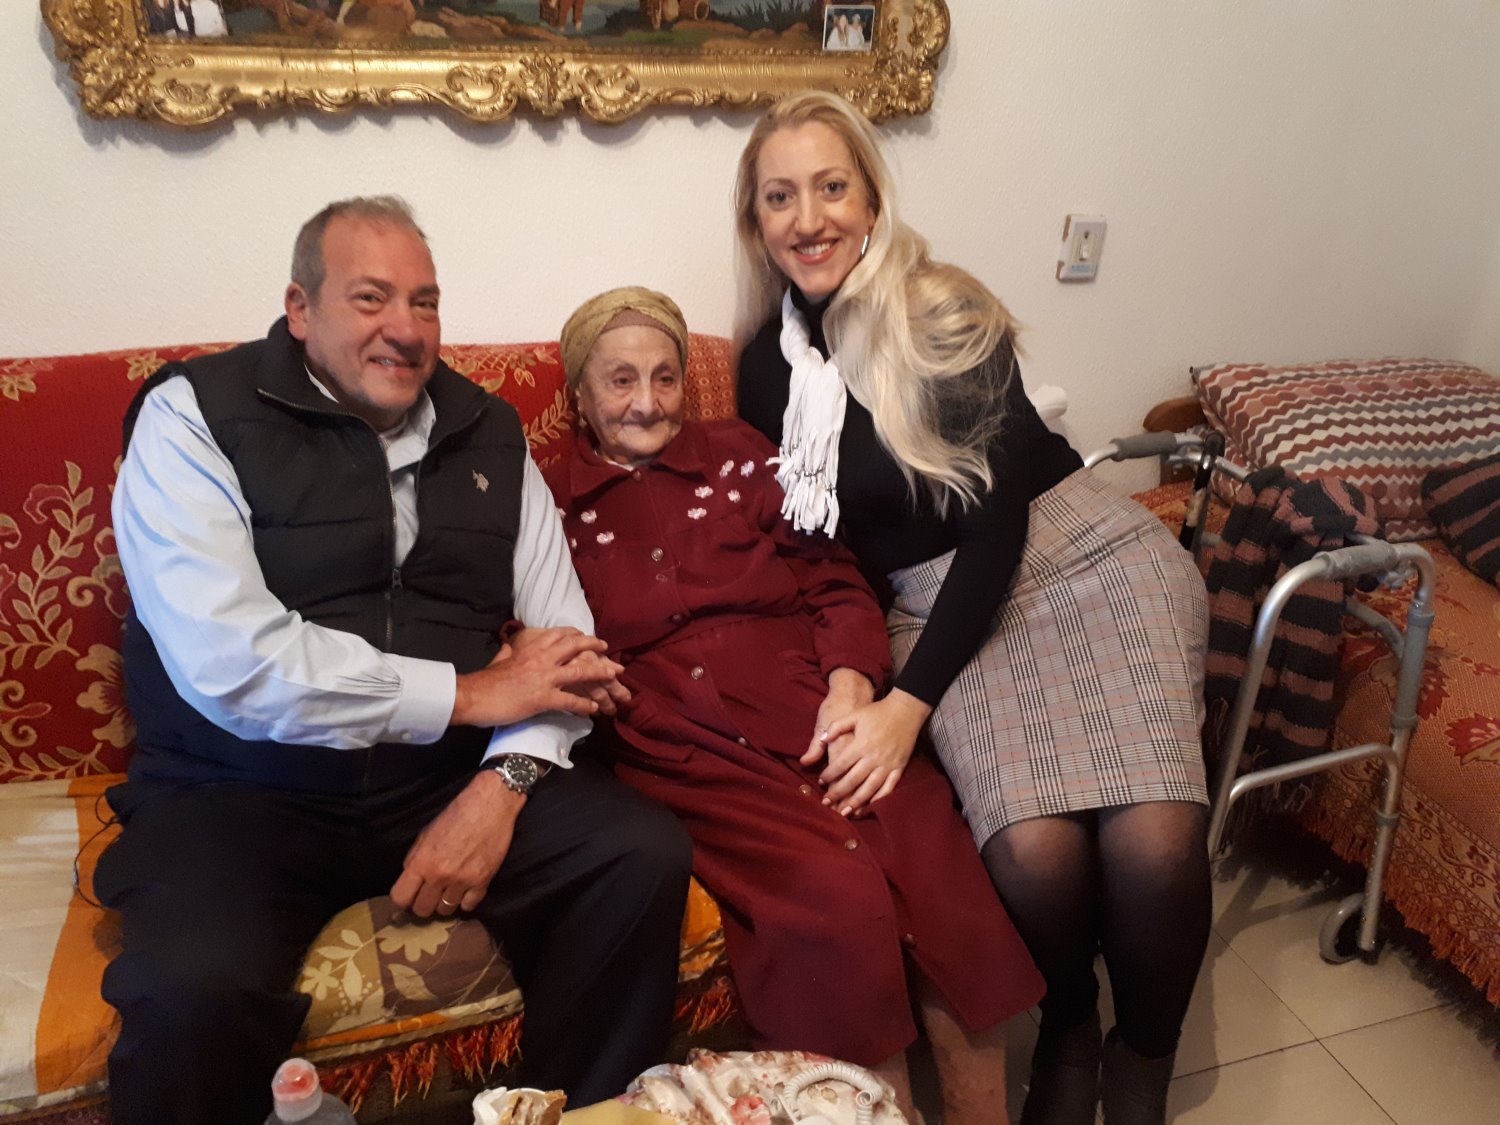 מתוך הסרטון האחרון שצילם הרב אקשטיין זל באשדוד עם הקשישה רוזה ללוש והמתנדבת רות מזרחי